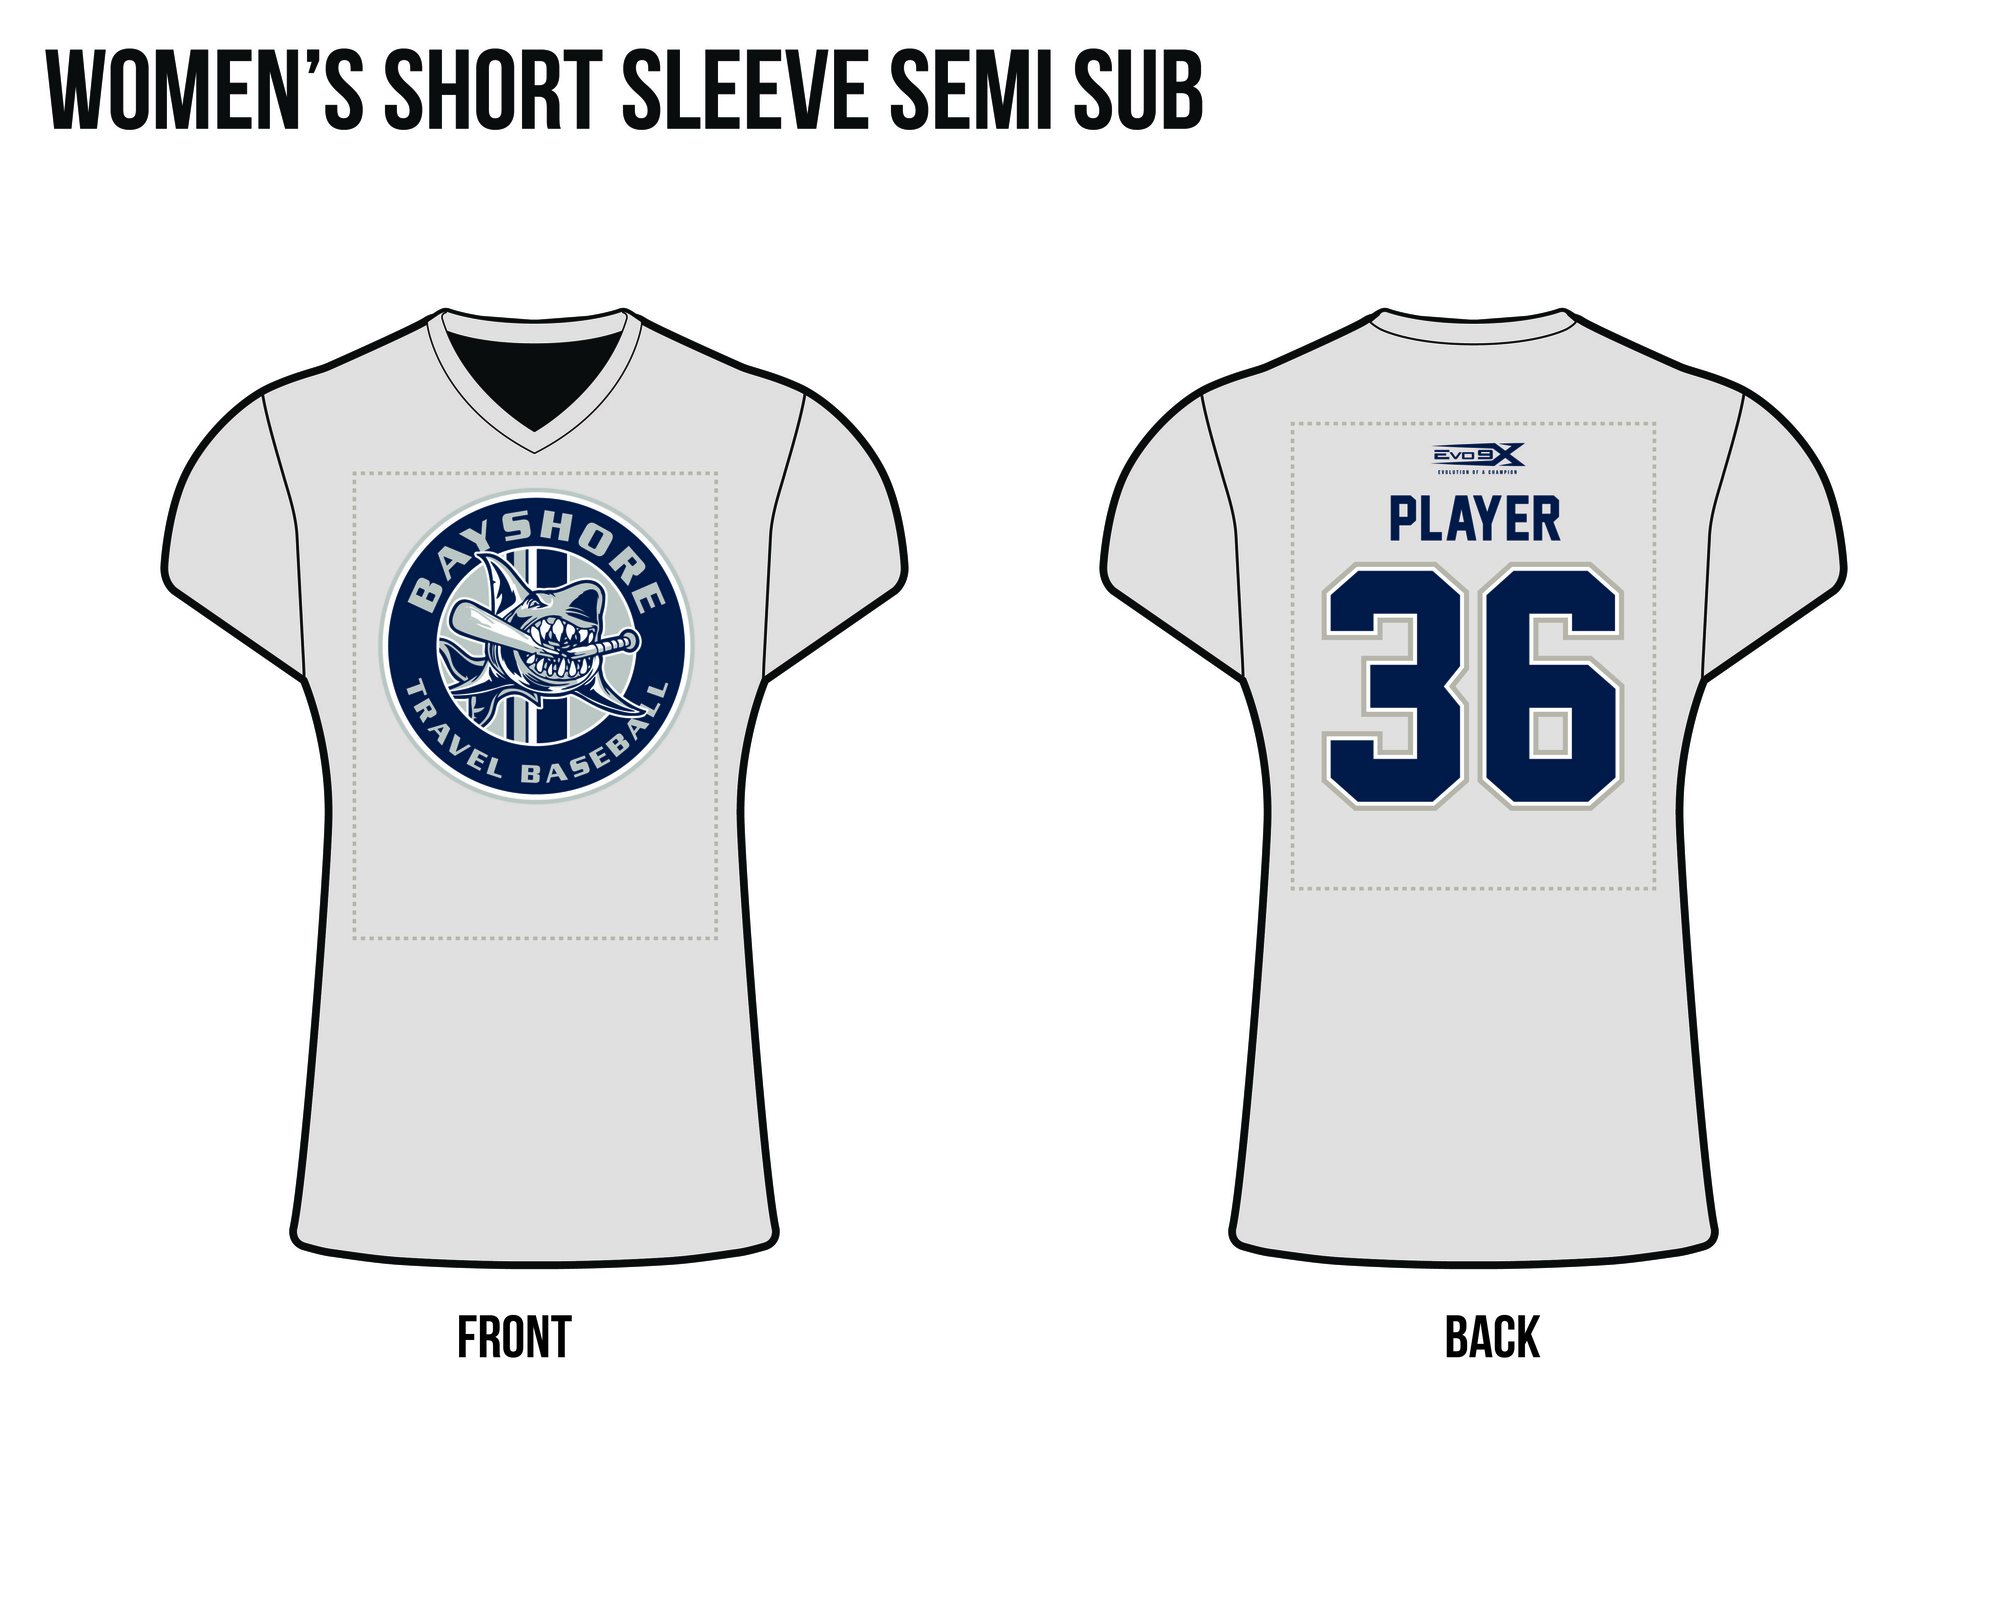 9U Semi Sublimated Women's Short Sleeve Shirt